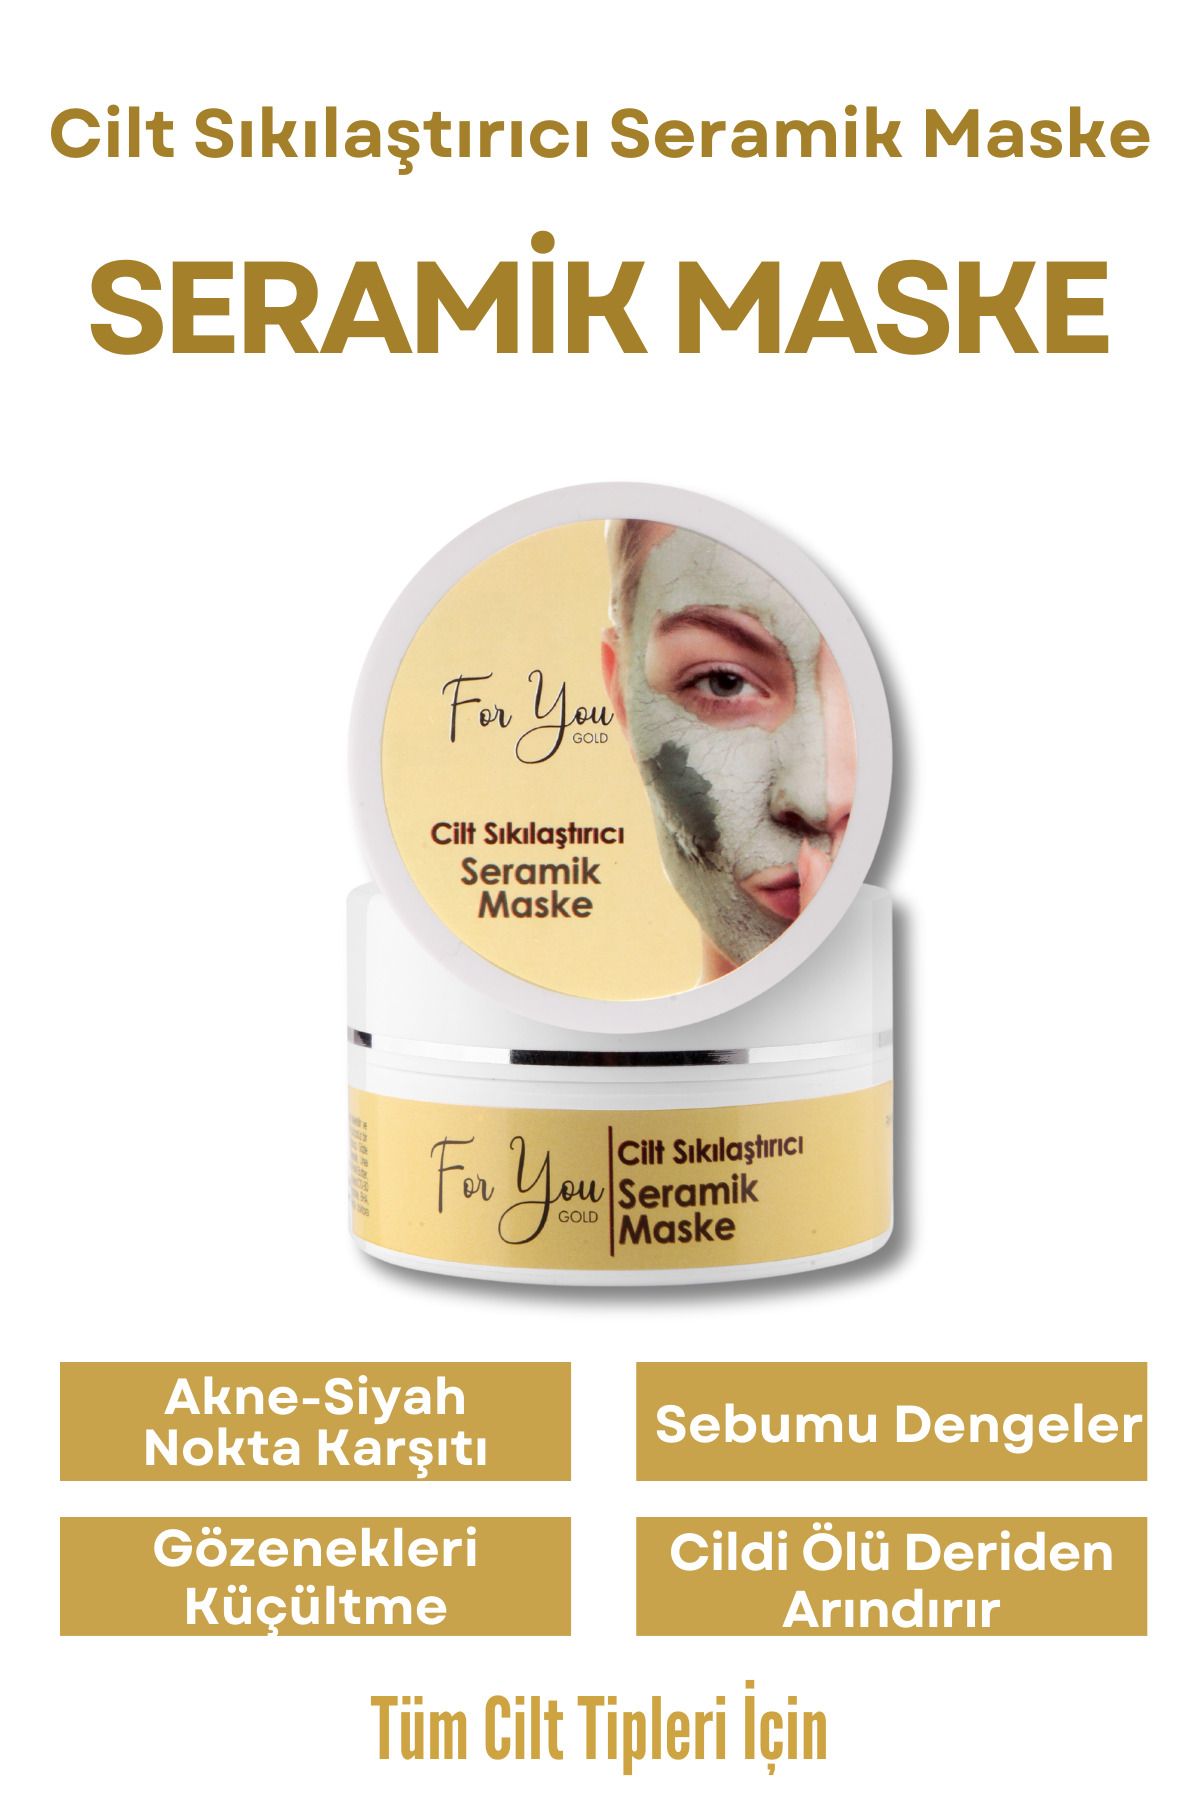 For You Gold Seramik - Kil Maske Cilt Sıkılaştırıcı Yüz Maskesi (GÖZENEK SIKILAŞTIRICI - AKNE KARŞITI)